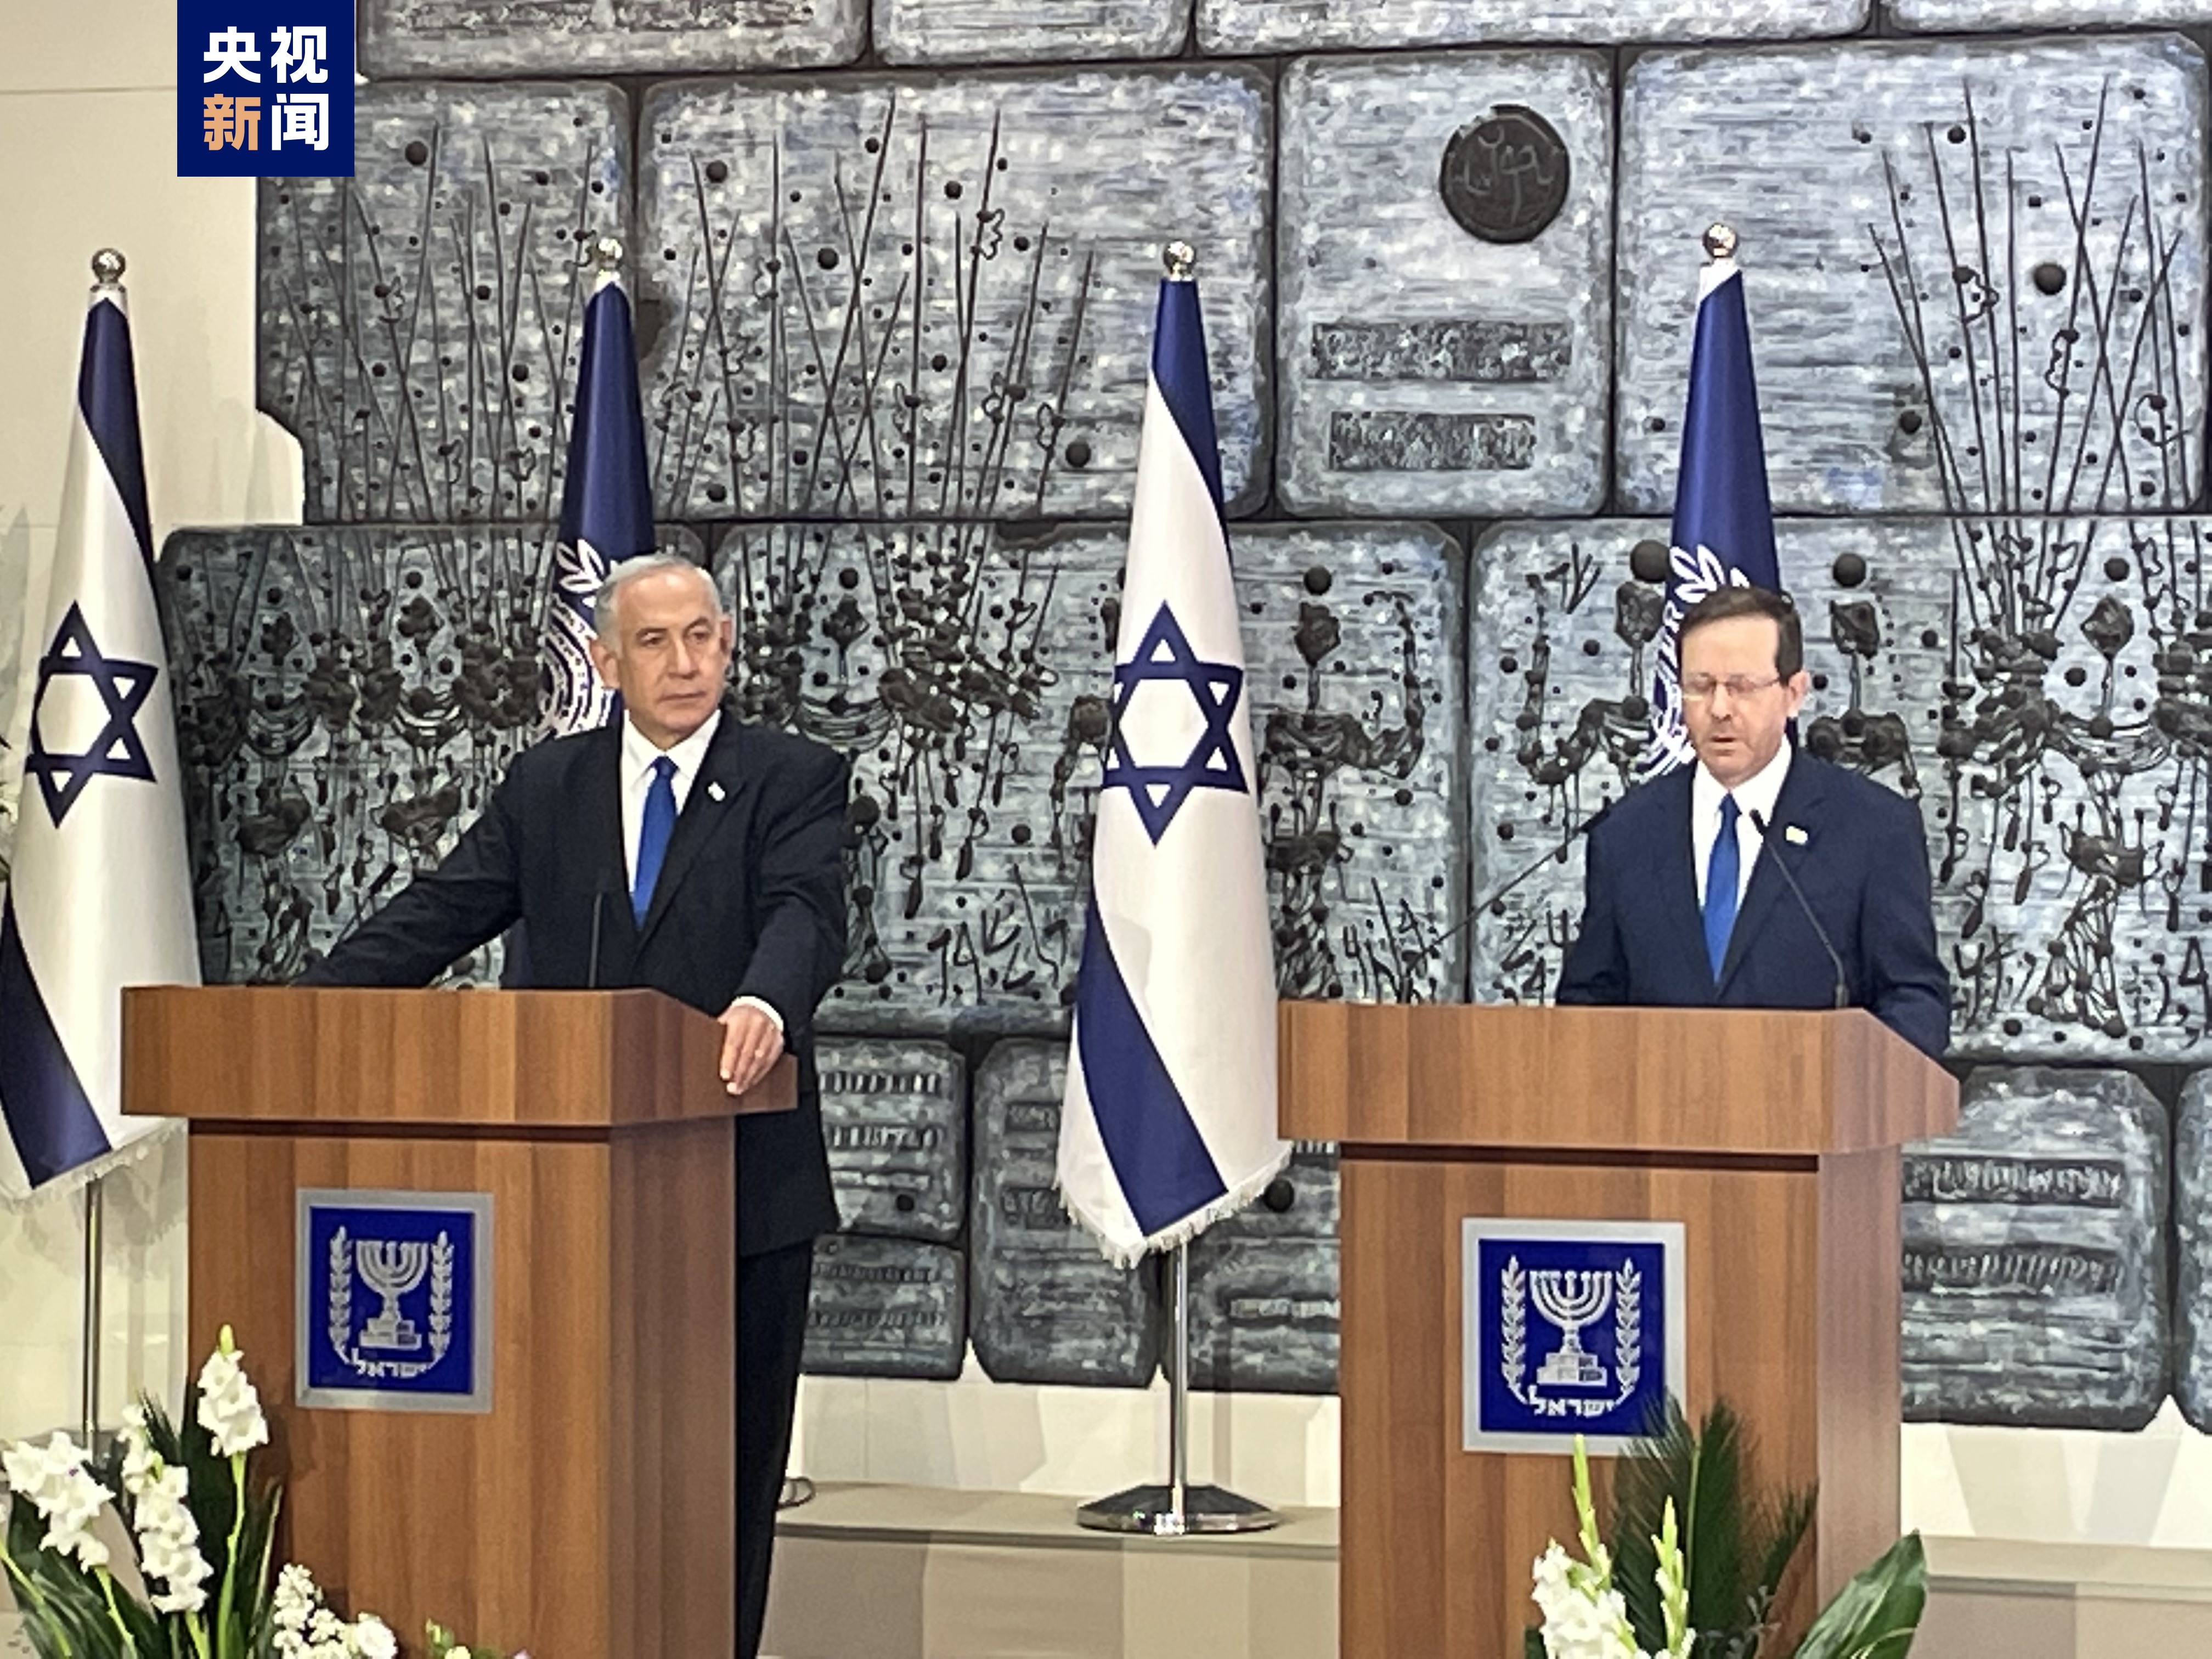 伊萨克·赫尔佐克当选以色列新一任总统_凤凰网视频_凤凰网